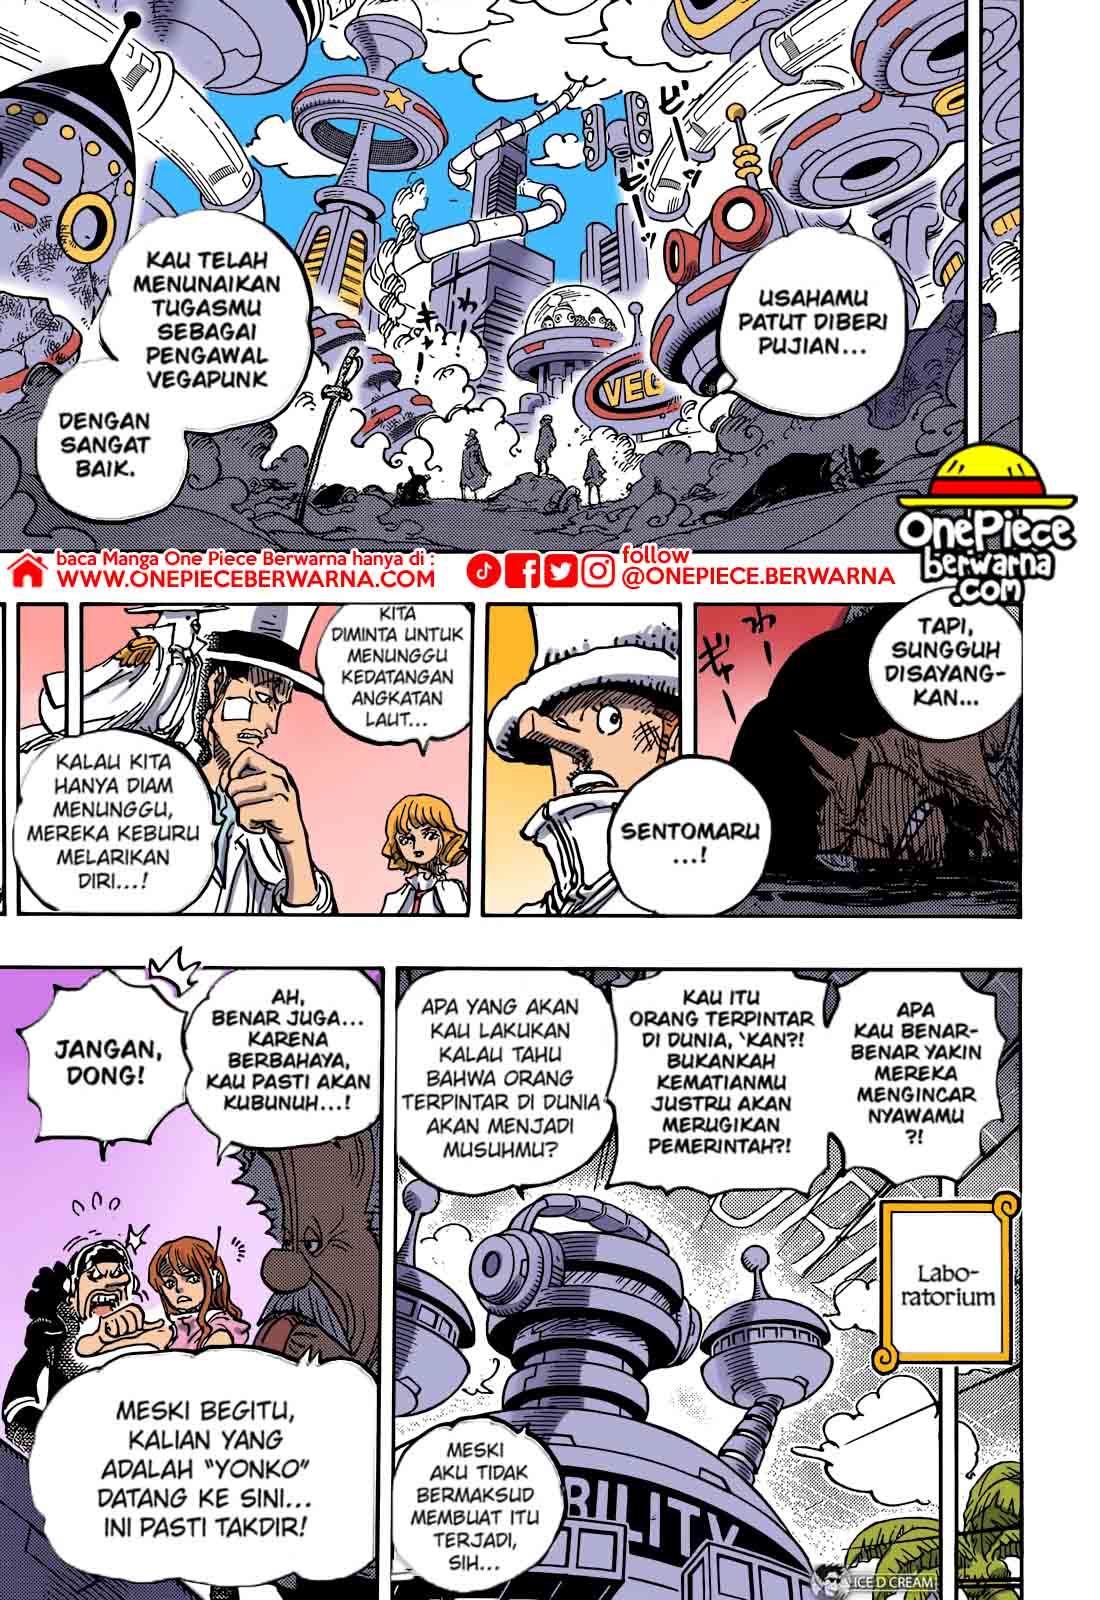 Baca manga komik One Piece Berwarna Bahasa Indonesia HD Chapter 1068